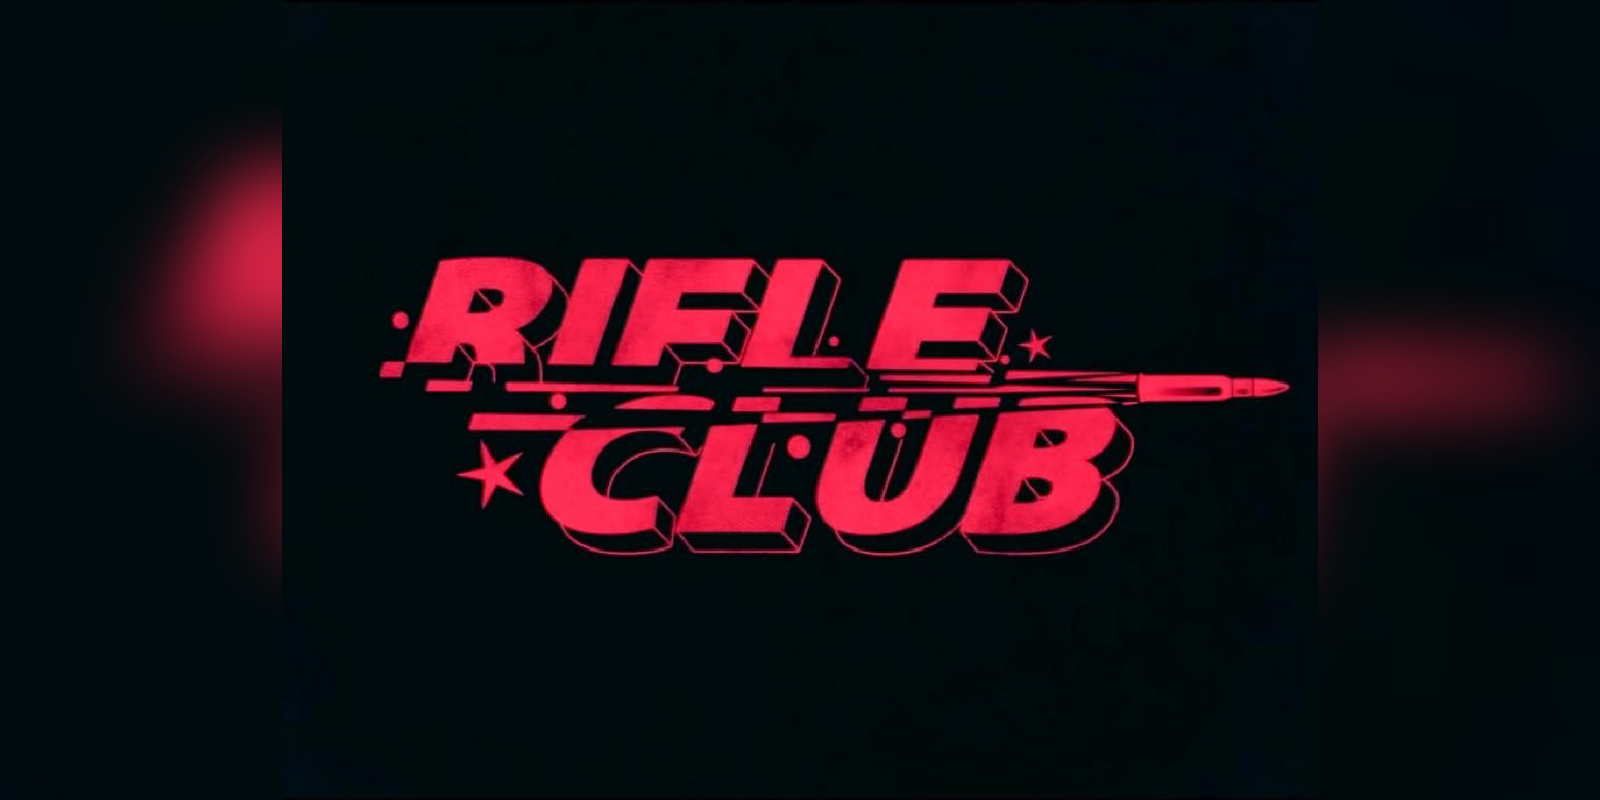 Ashiq Abu reveals updates about rifle club